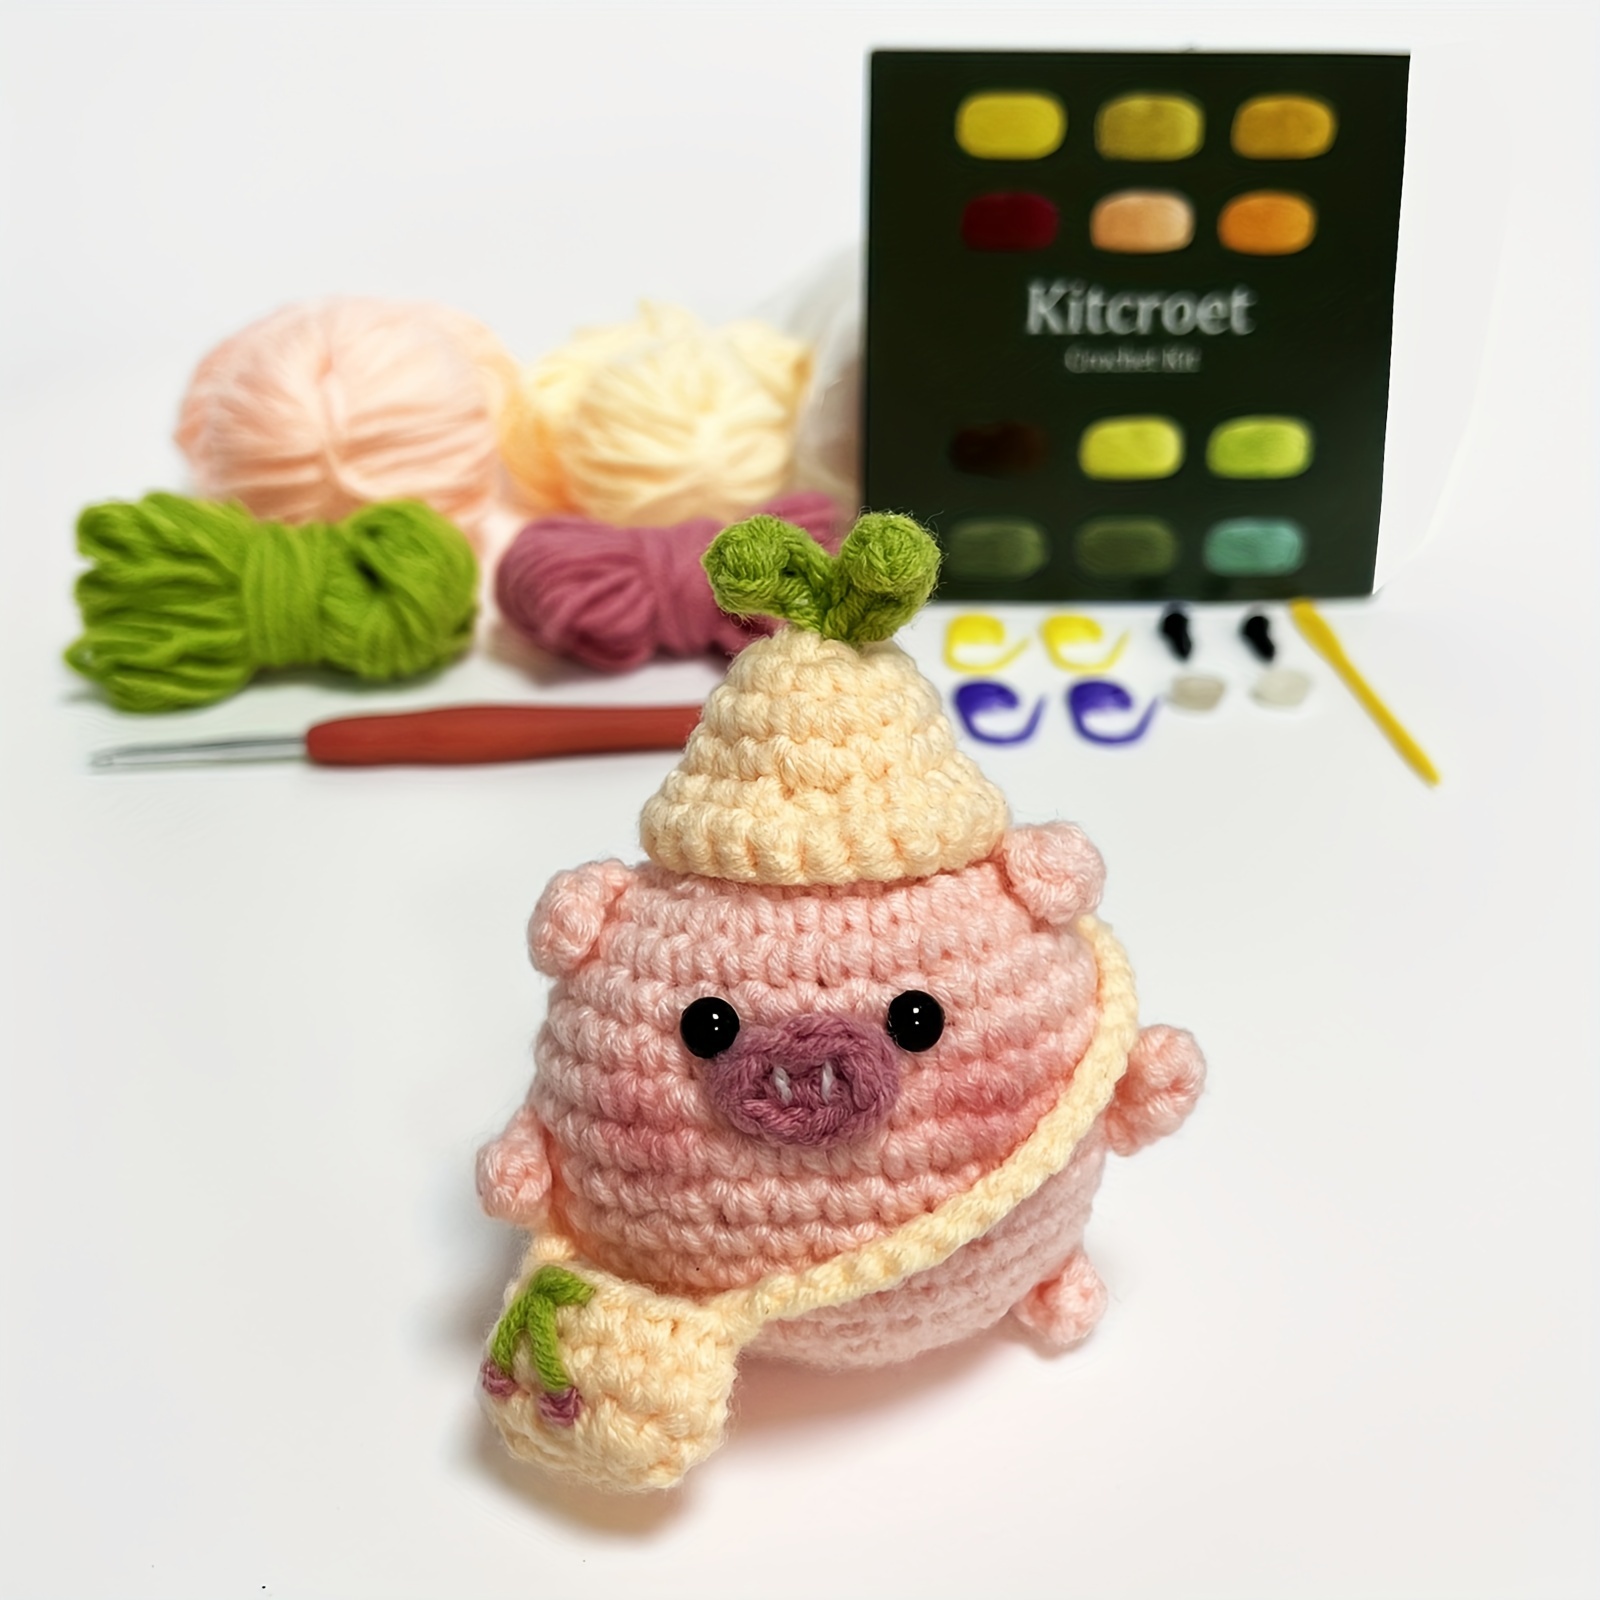 Wobbles Crochet Kit Corgi Doll Beginner Crochet Kit DIY Craft Art